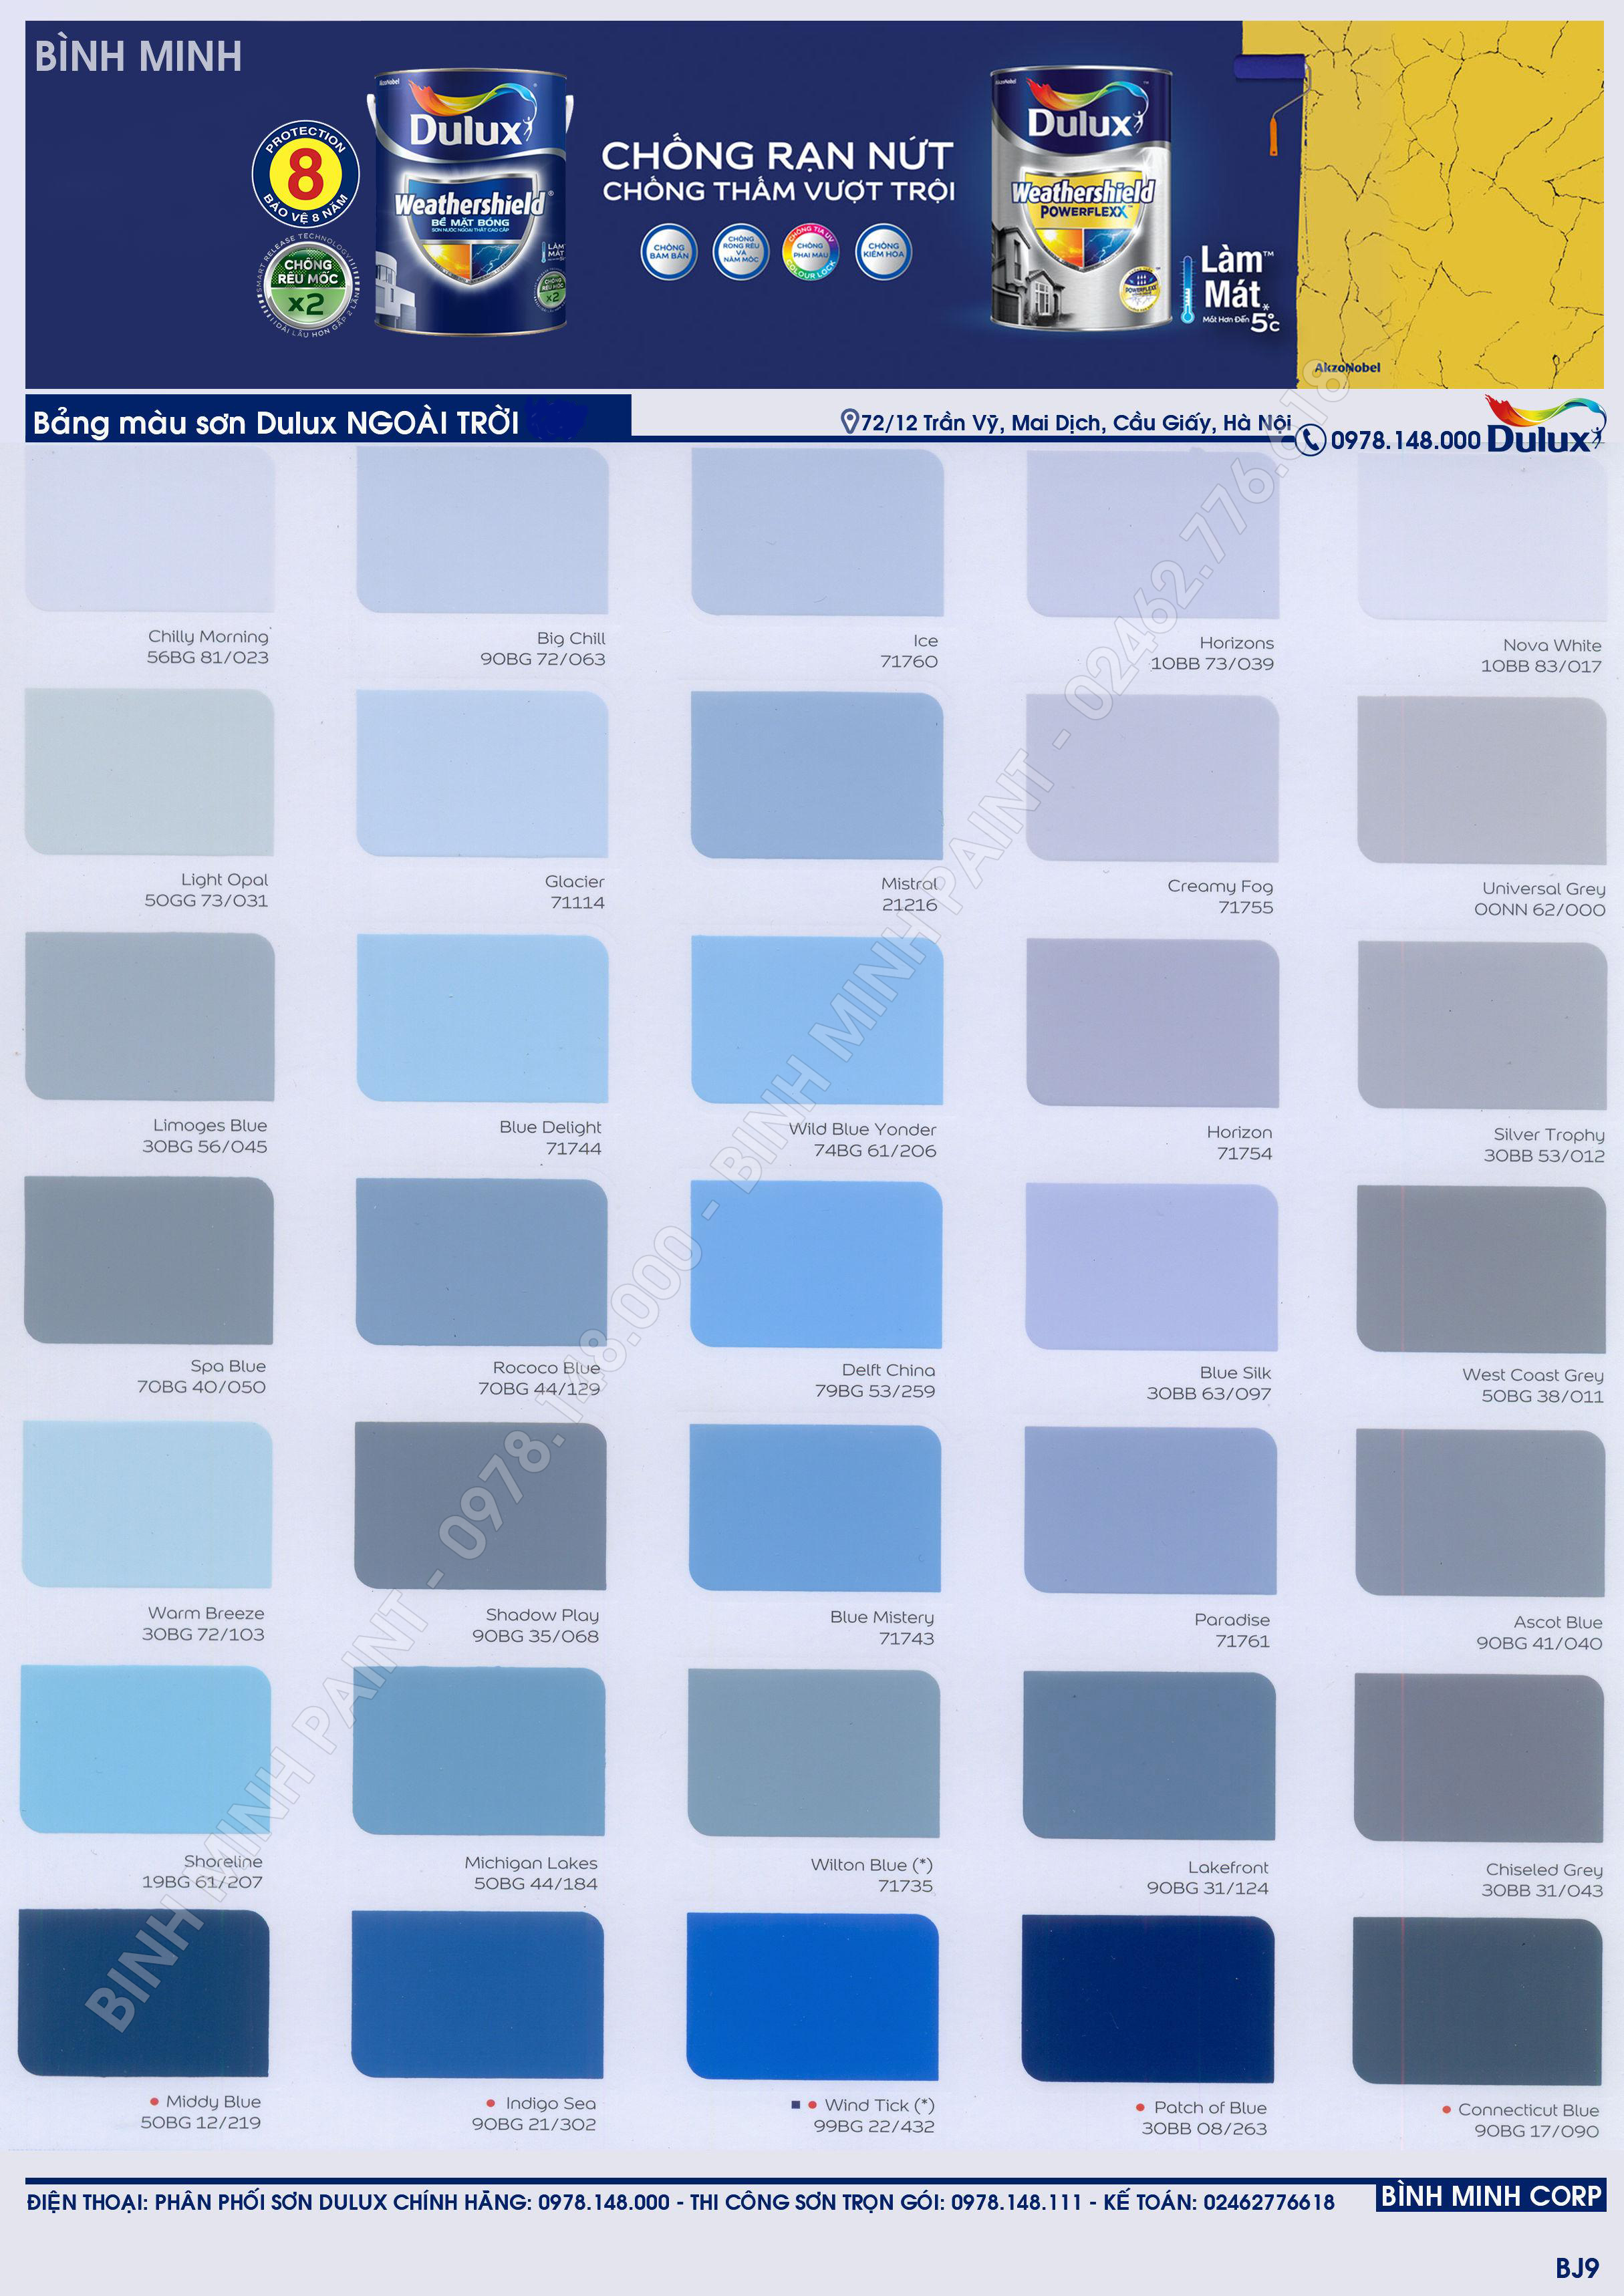 Nếu bạn muốn tìm kiếm báo giá sơn Dulux màu xanh nước biển, hãy xem qua hình ảnh để có thể lựa chọn sản phẩm phù hợp với ngân sách của mình. Đảm bảo bạn sẽ tìm được điều mình cần với sự hỗ trợ từ kinh nghiệm của Dulux.